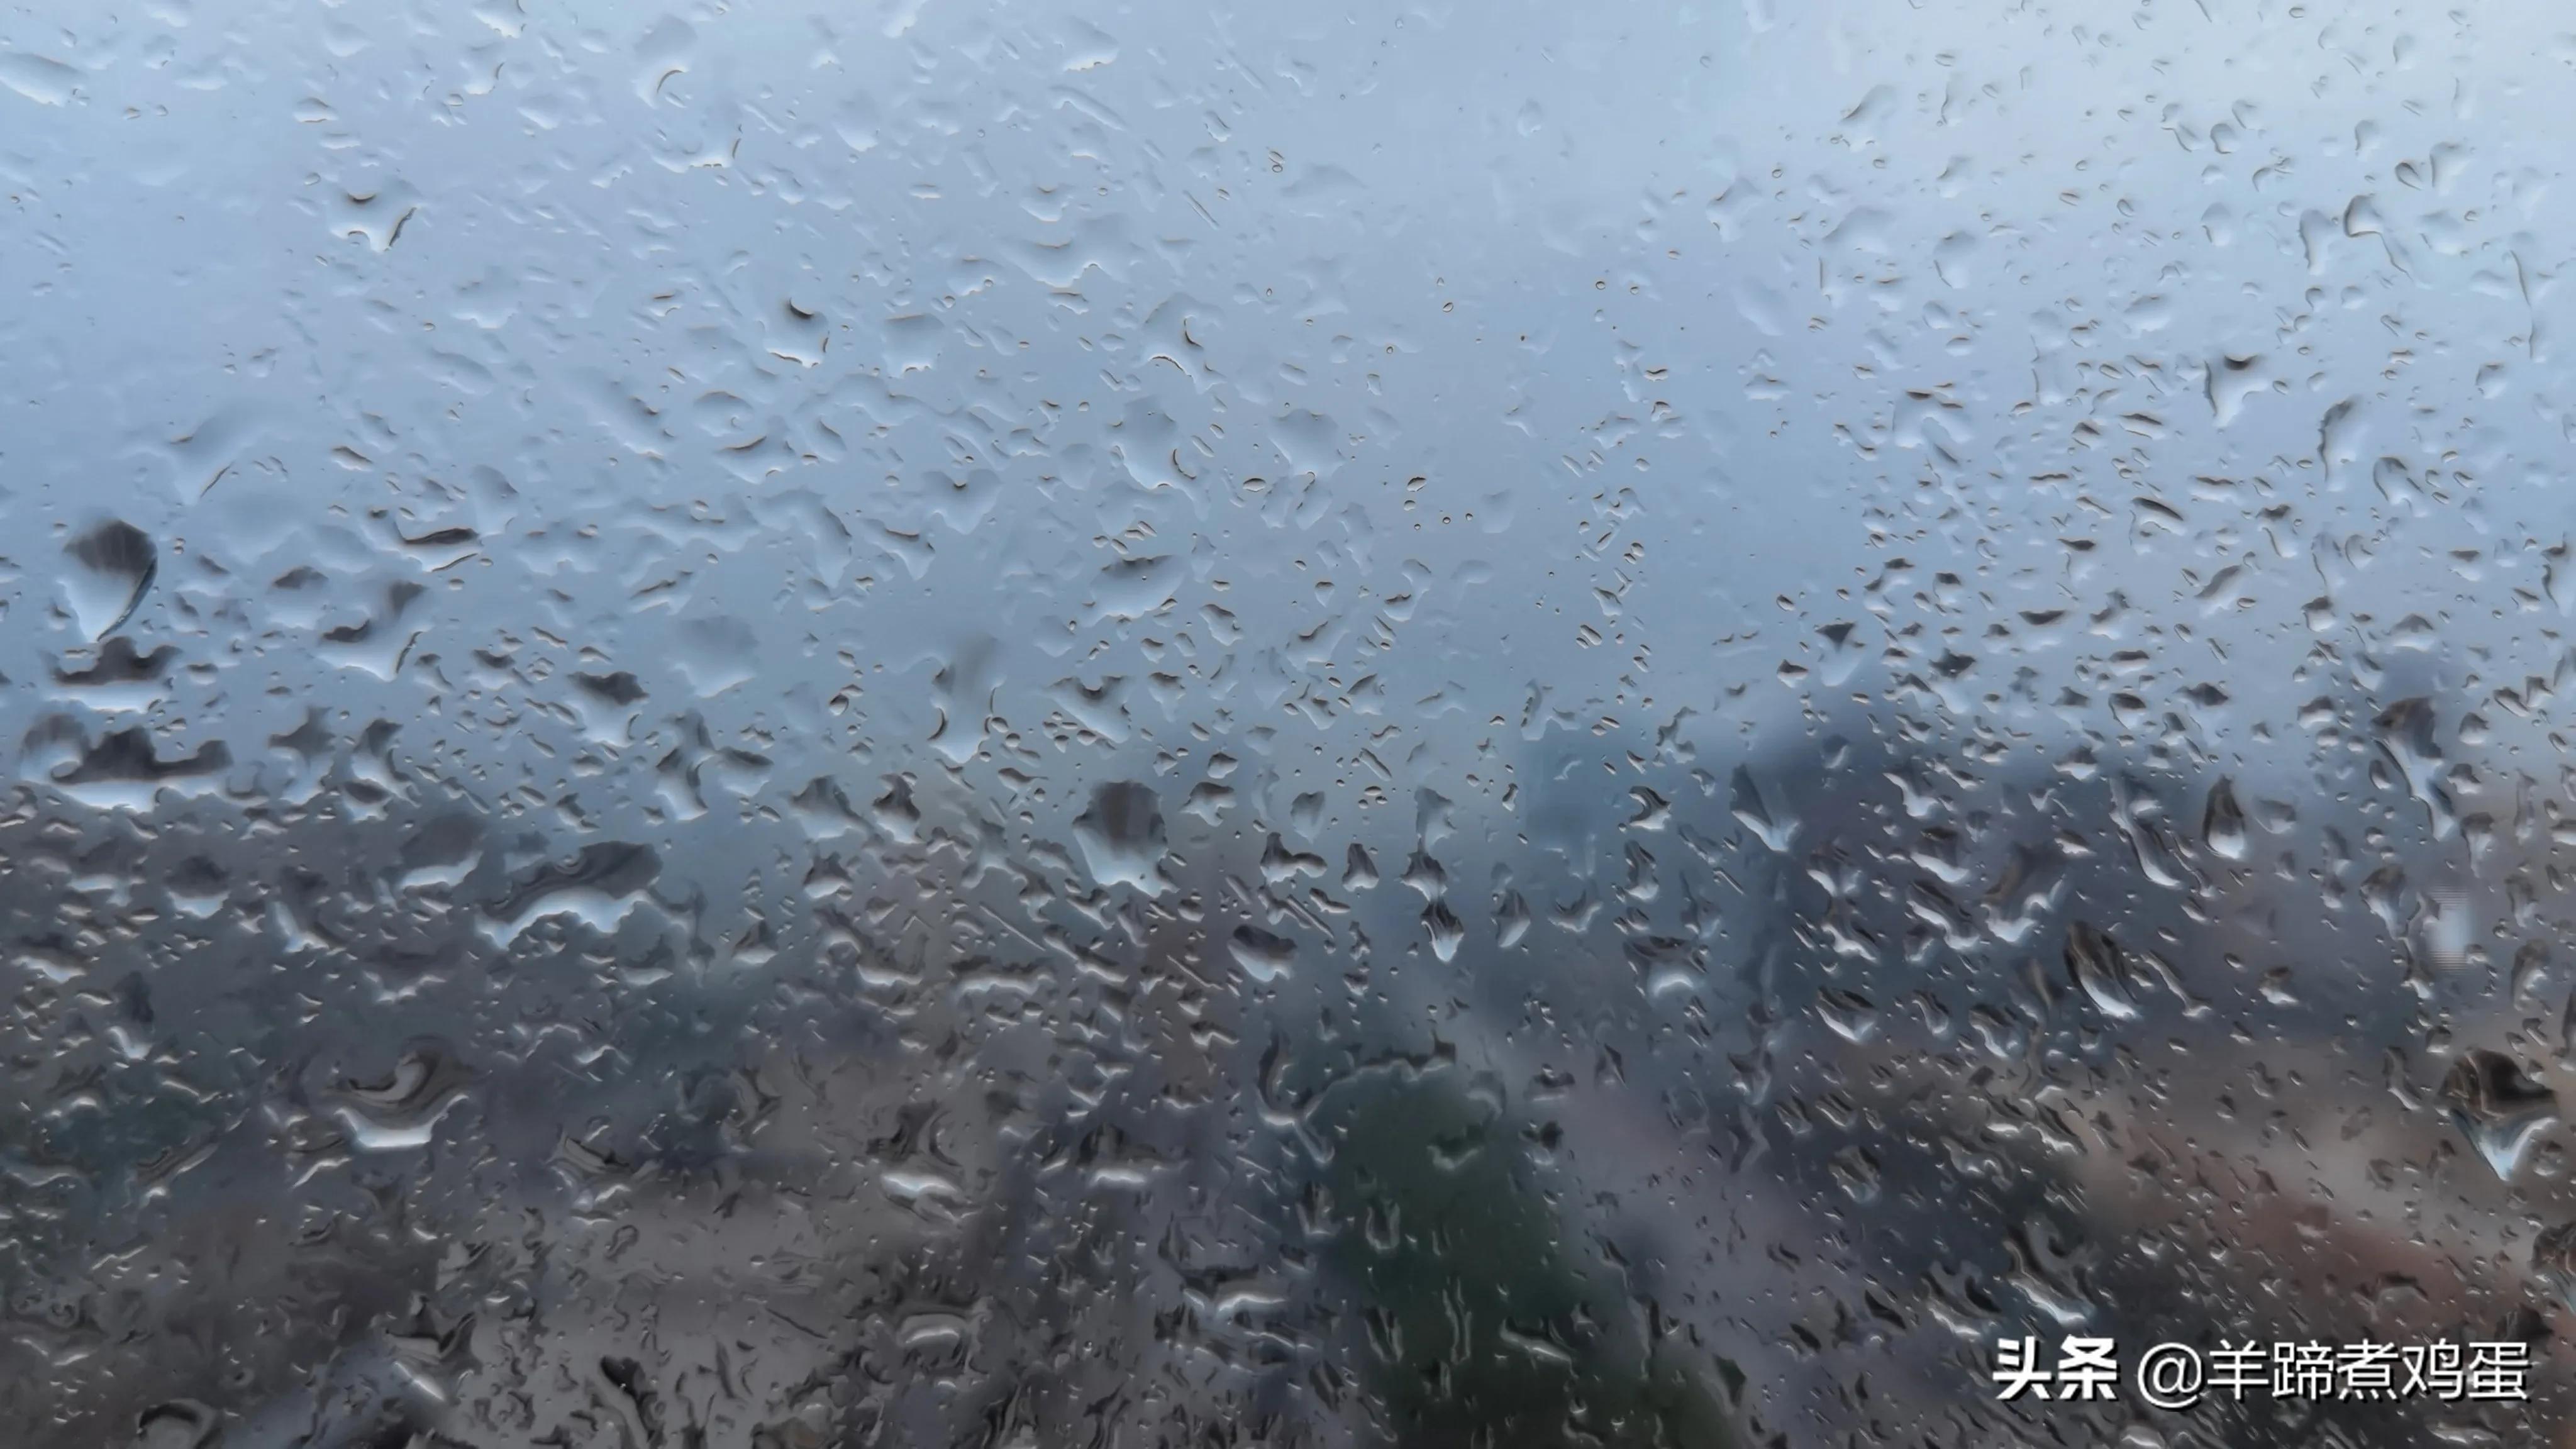 淫雨唤云行日隐耀霞红--雨后北京云空的美丽身影留下霞浓